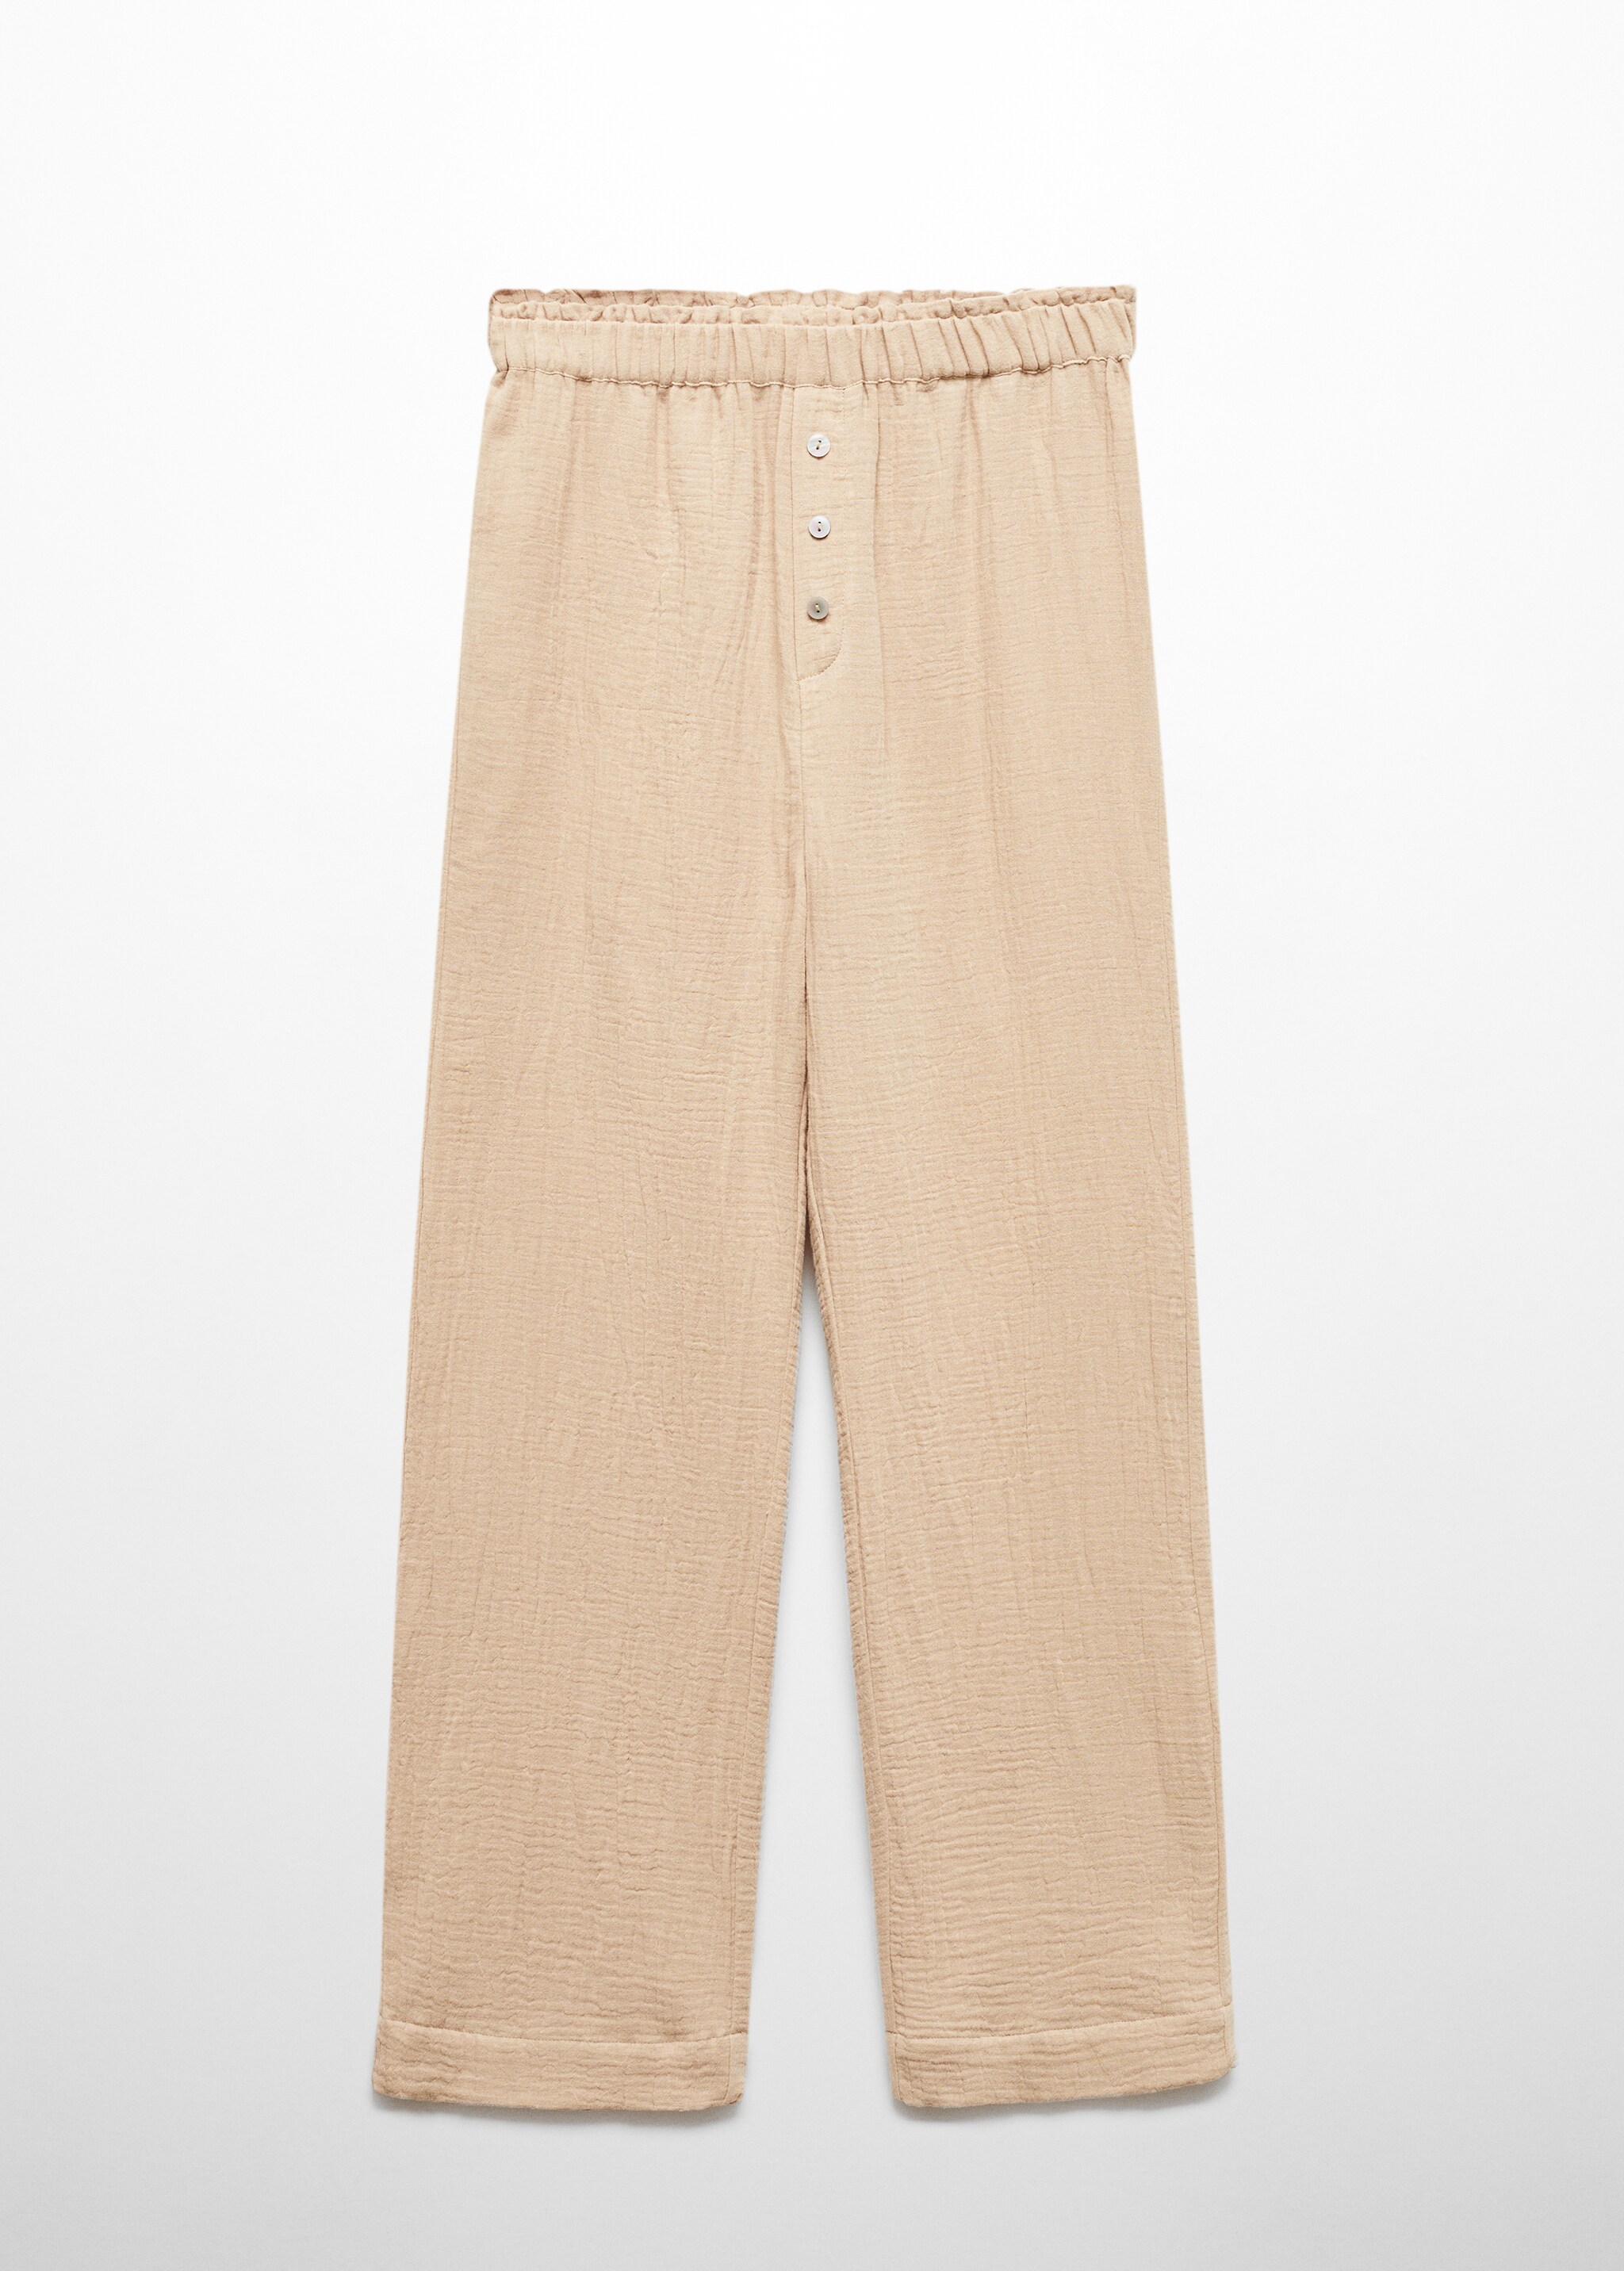 Хлопковые пижамные брюки из шифона - Изделие без модели